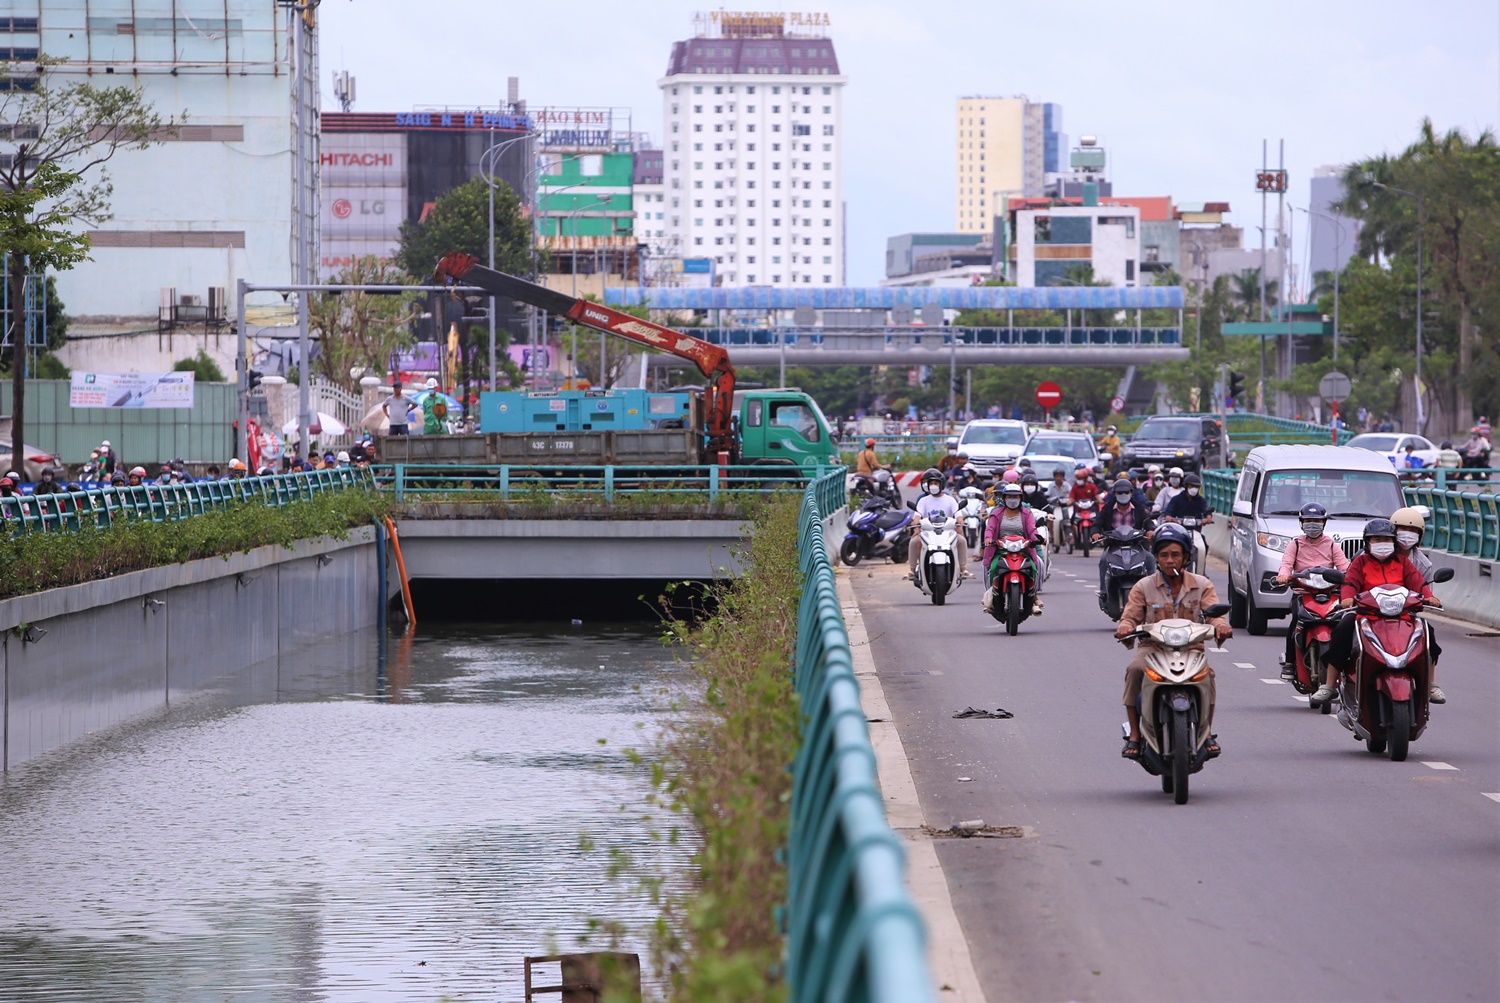 Hầm chui trăm tỷ ở Đà Nẵng lại ngập gần đến nóc - Ảnh 12.